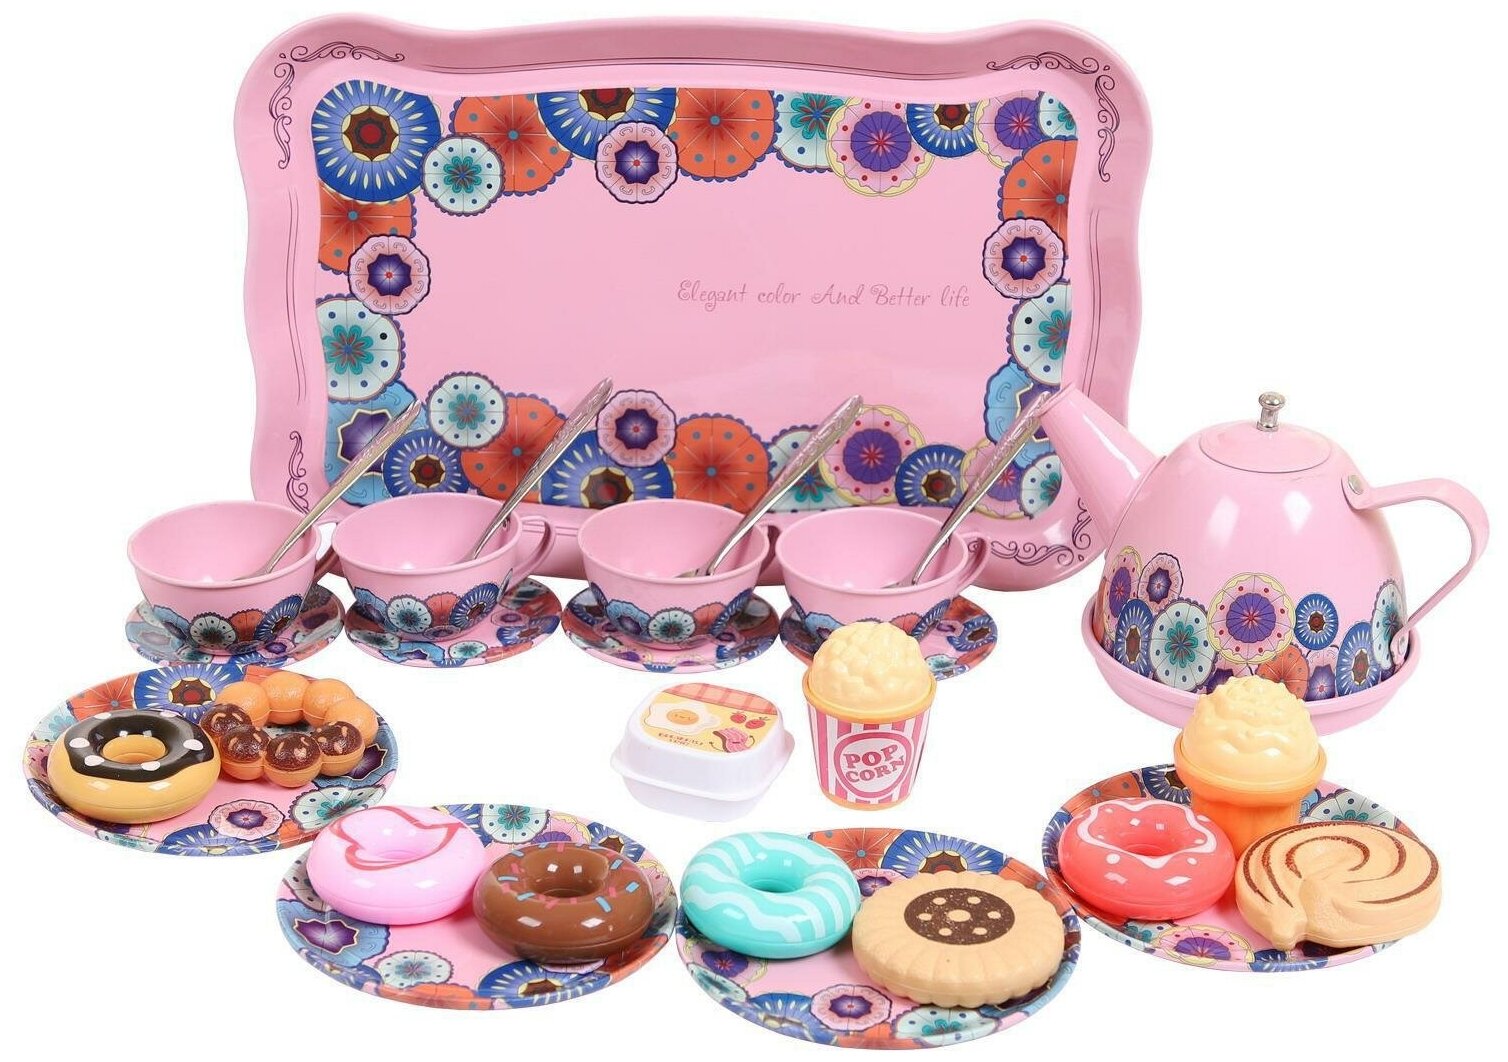 Набор посудки Junfa металлическая в наборе с чайником, чашками, блюдцами, подносом, розовый